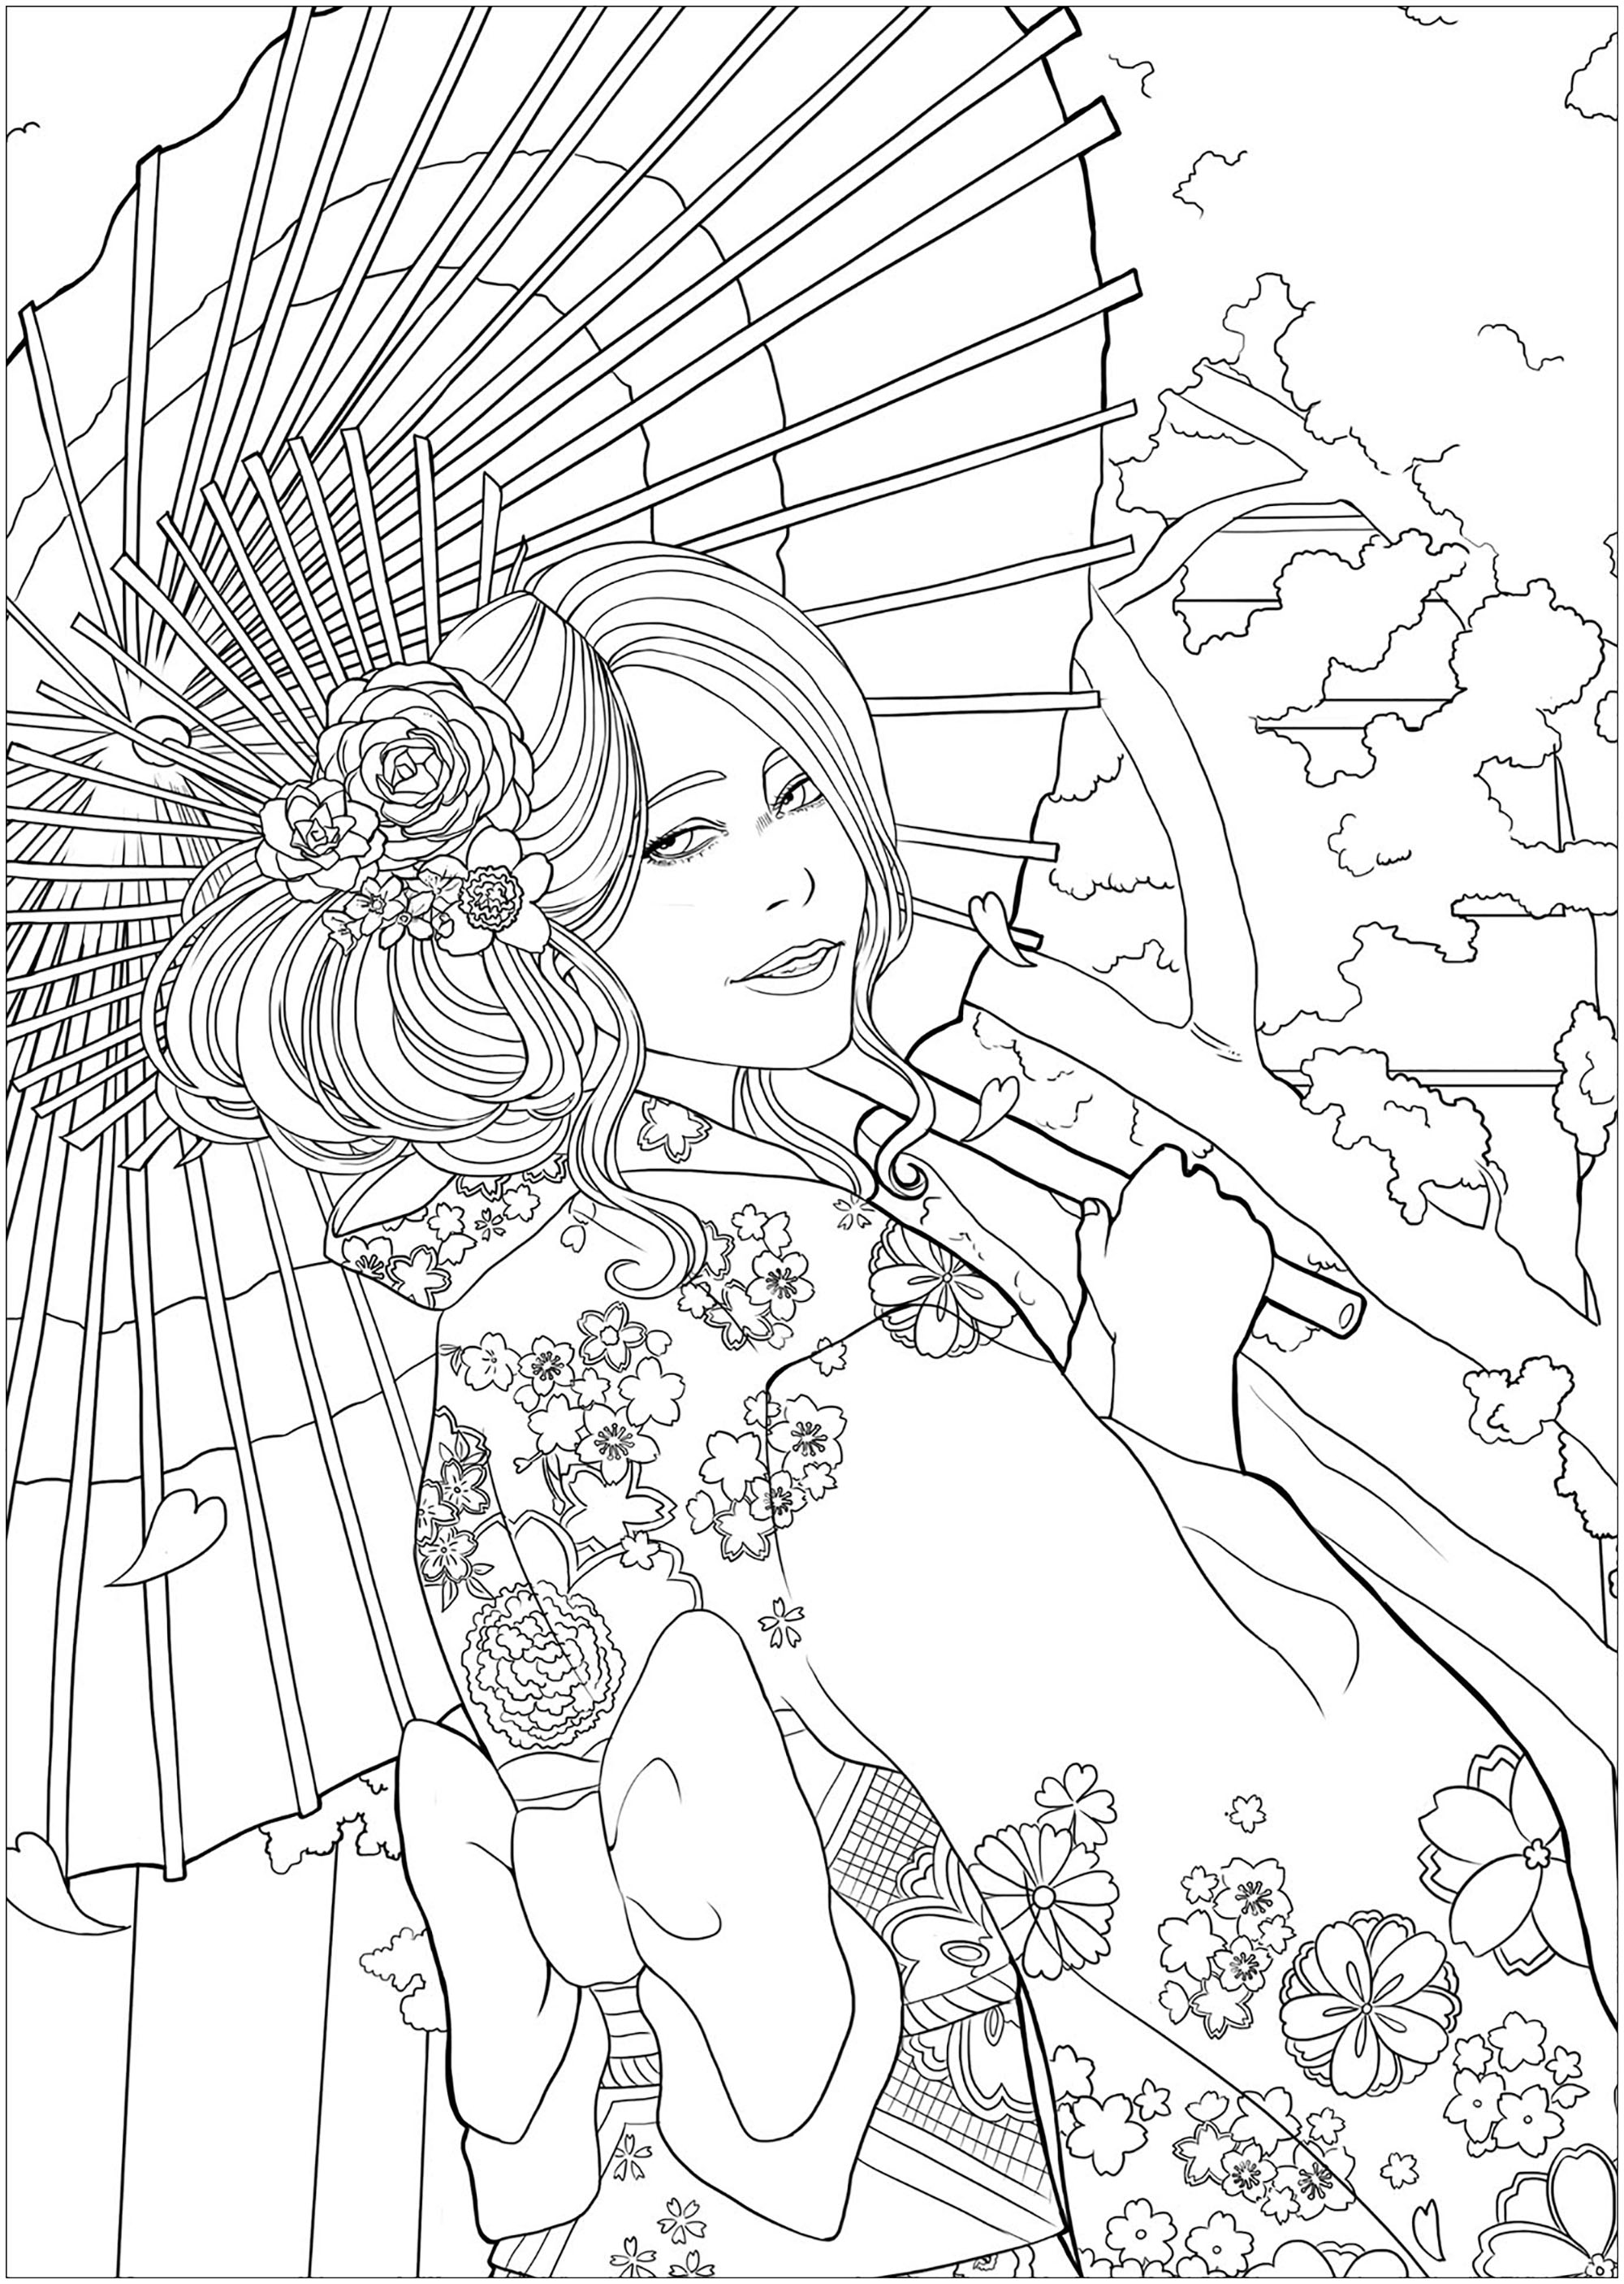 Mulher jovem e elegante em frente a um templo e a flores de cerejeira, com o seu mais belo yukata. Versão fácil 2, Artista : Lestat Hallward Holmes